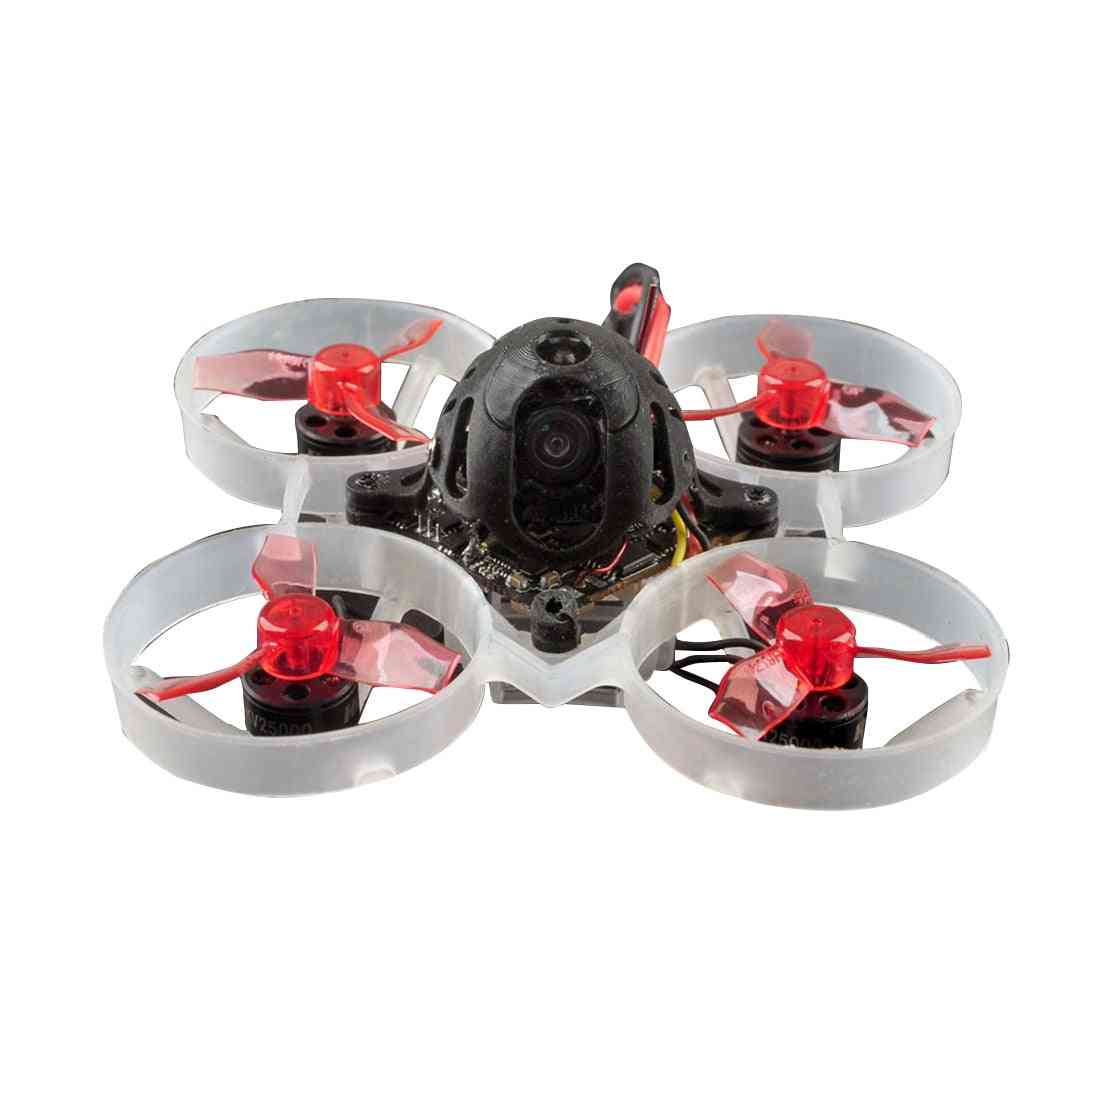 Trkaći dron s 4 u 1 - jednostavan za upotrebu